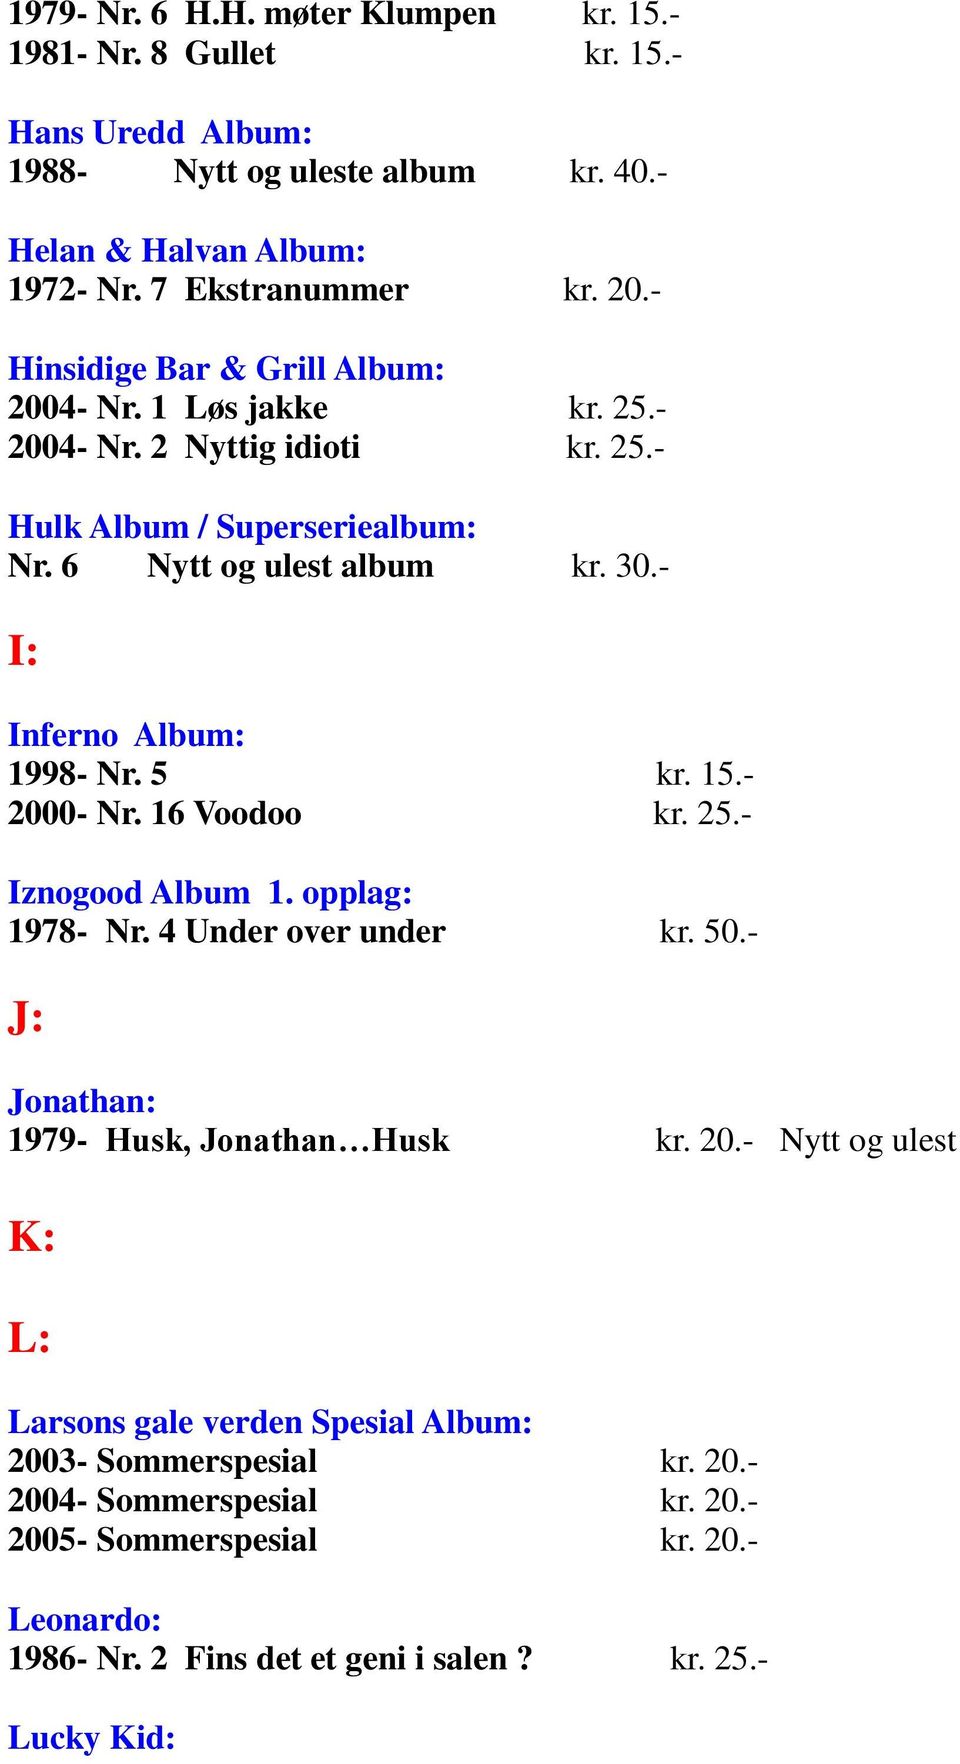 - I: Inferno Album: 1998- Nr. 5 kr. 15.- 2000- Nr. 16 Voodoo kr. 25.- Iznogood Album 1. opplag: 1978- Nr. 4 Under over under kr. 50.- J: Jonathan: 1979- Husk, Jonathan Husk kr. 20.- Nytt og ulest K: L: Larsons gale verden Spesial Album: 2003- Sommerspesial kr.